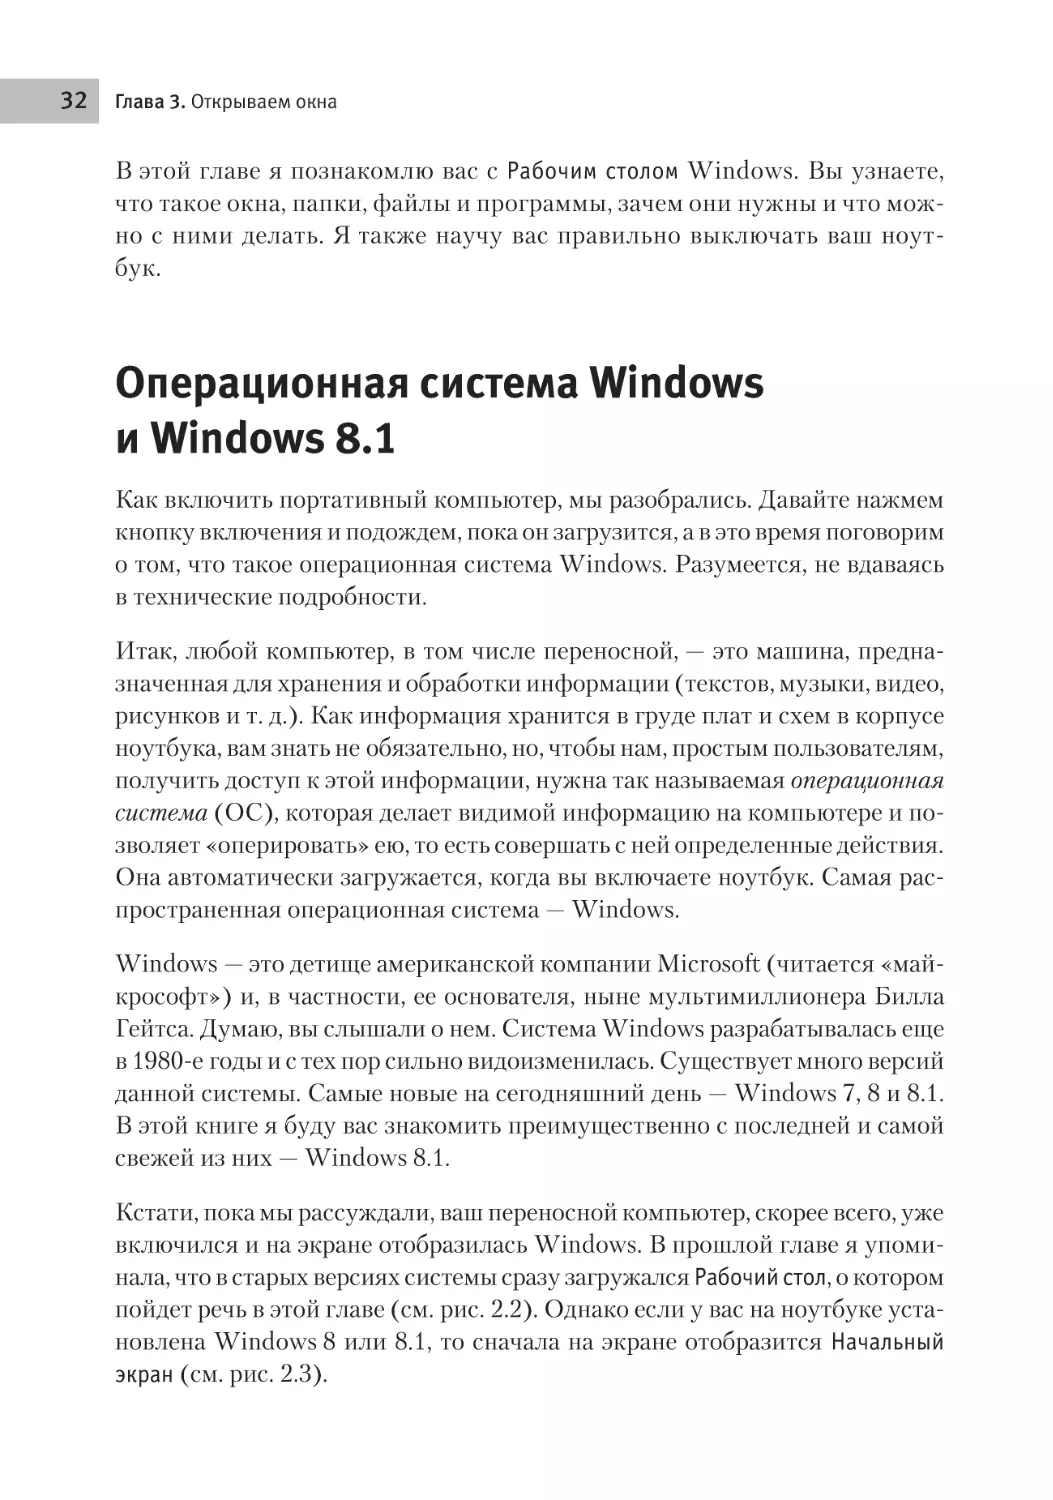 Операционная система Windows и Windows 8.1